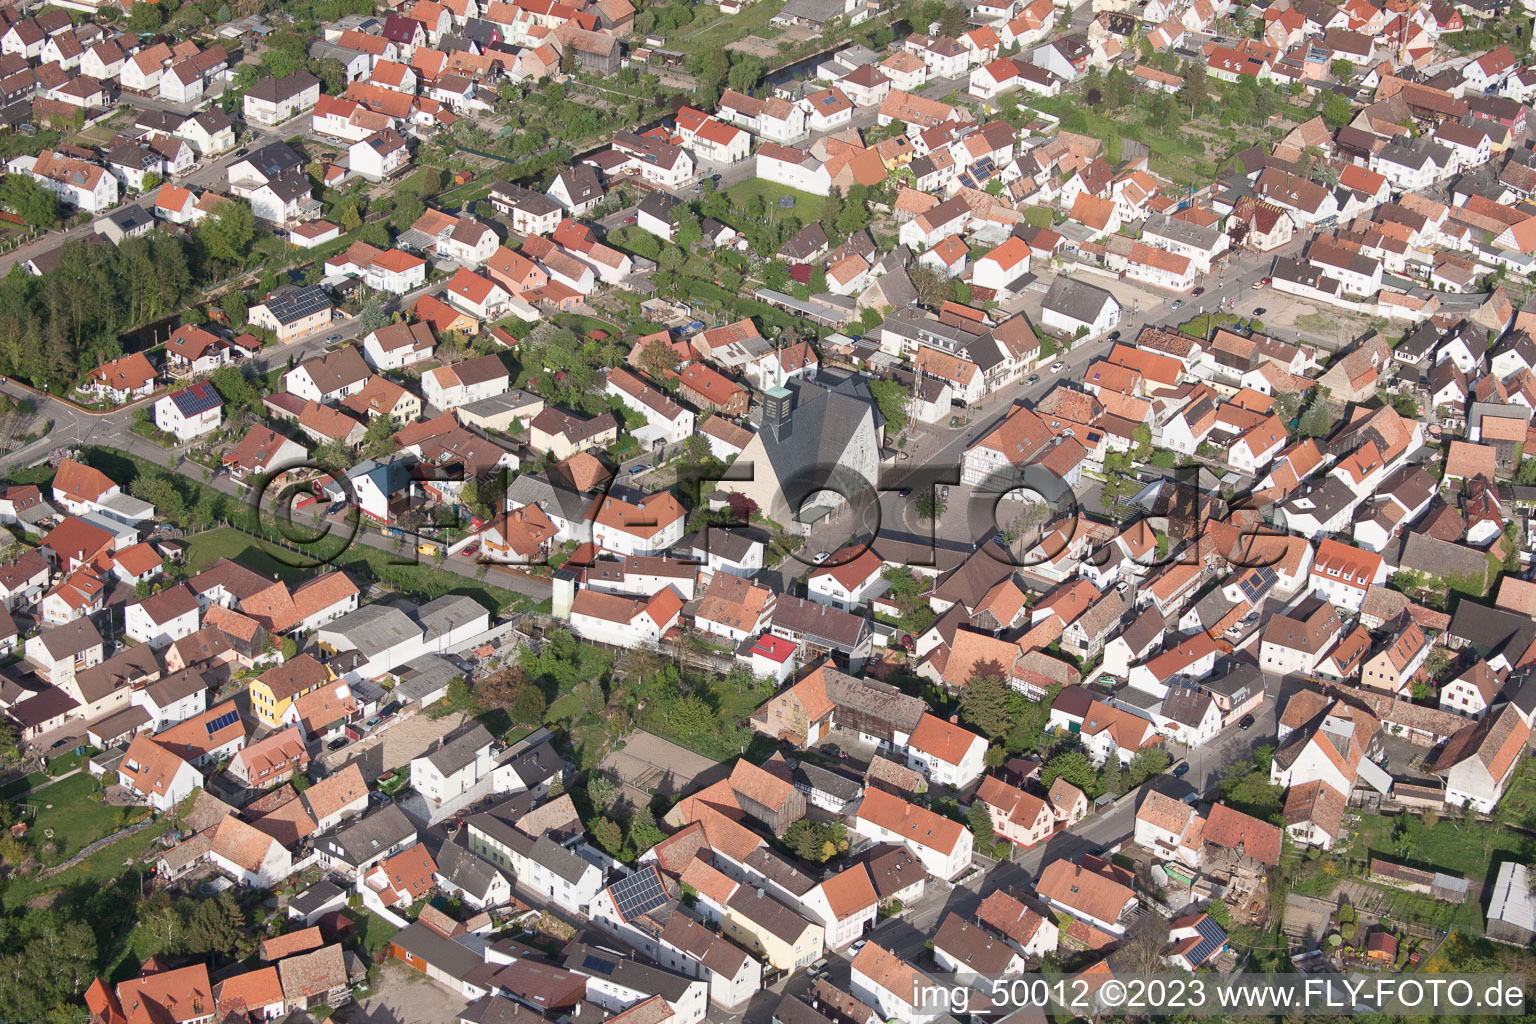 Leimersheim im Bundesland Rheinland-Pfalz, Deutschland von der Drohne aus gesehen